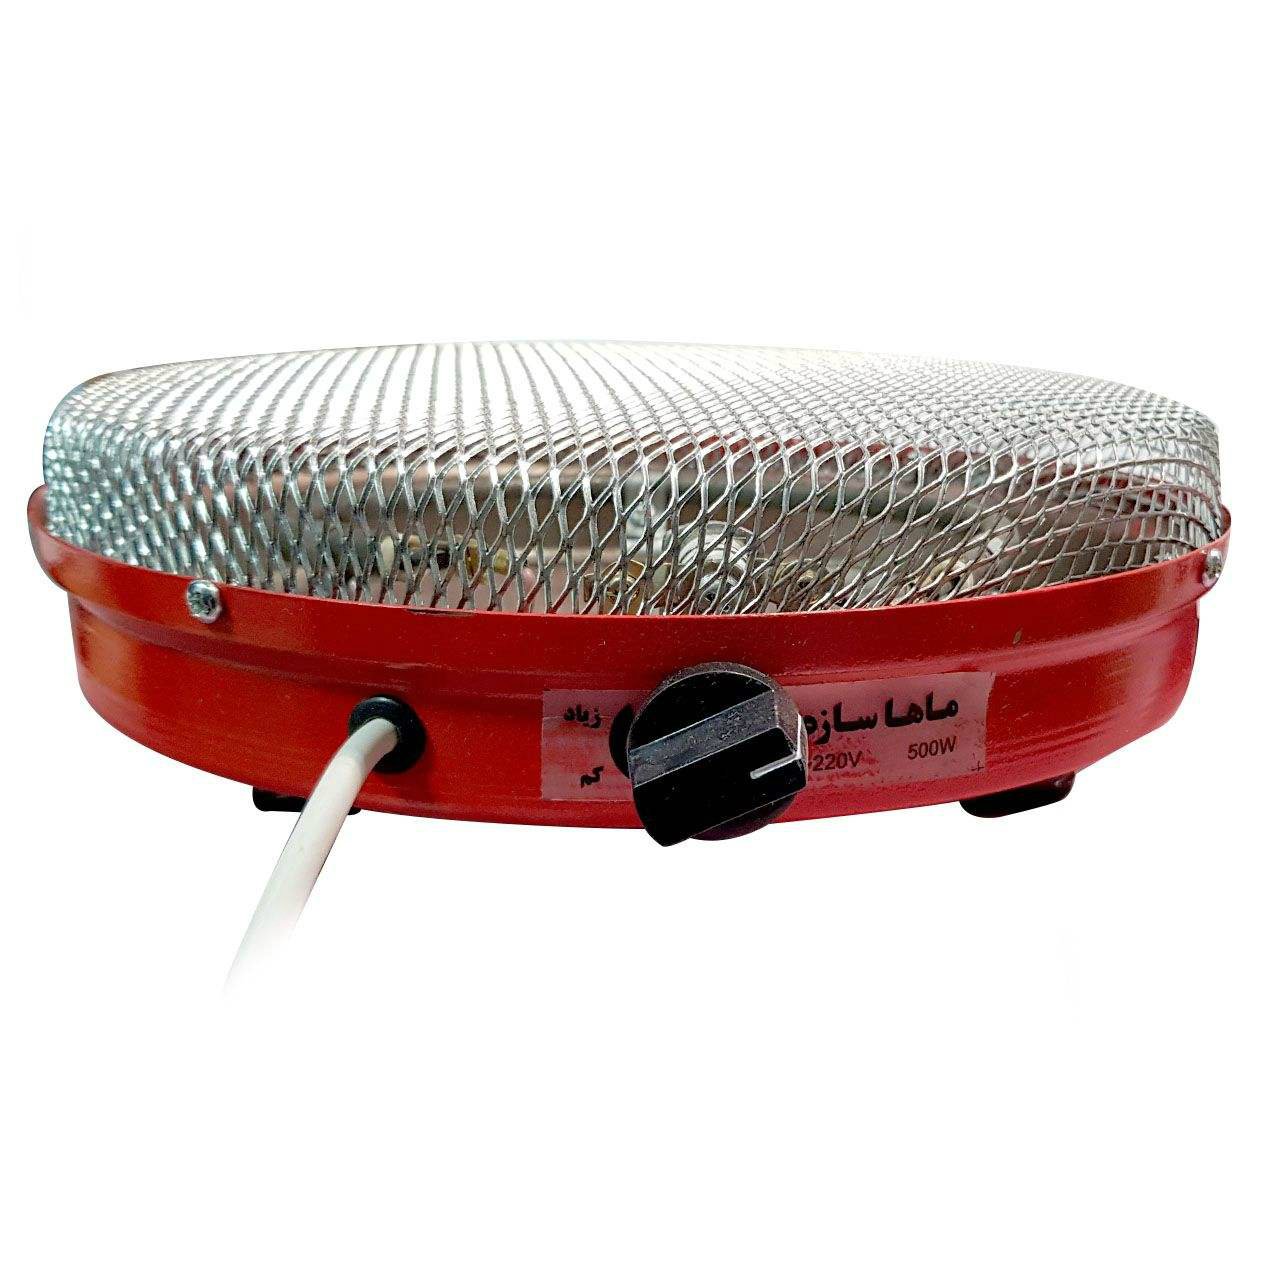 Mahan saze fan heater 600W%20(1)